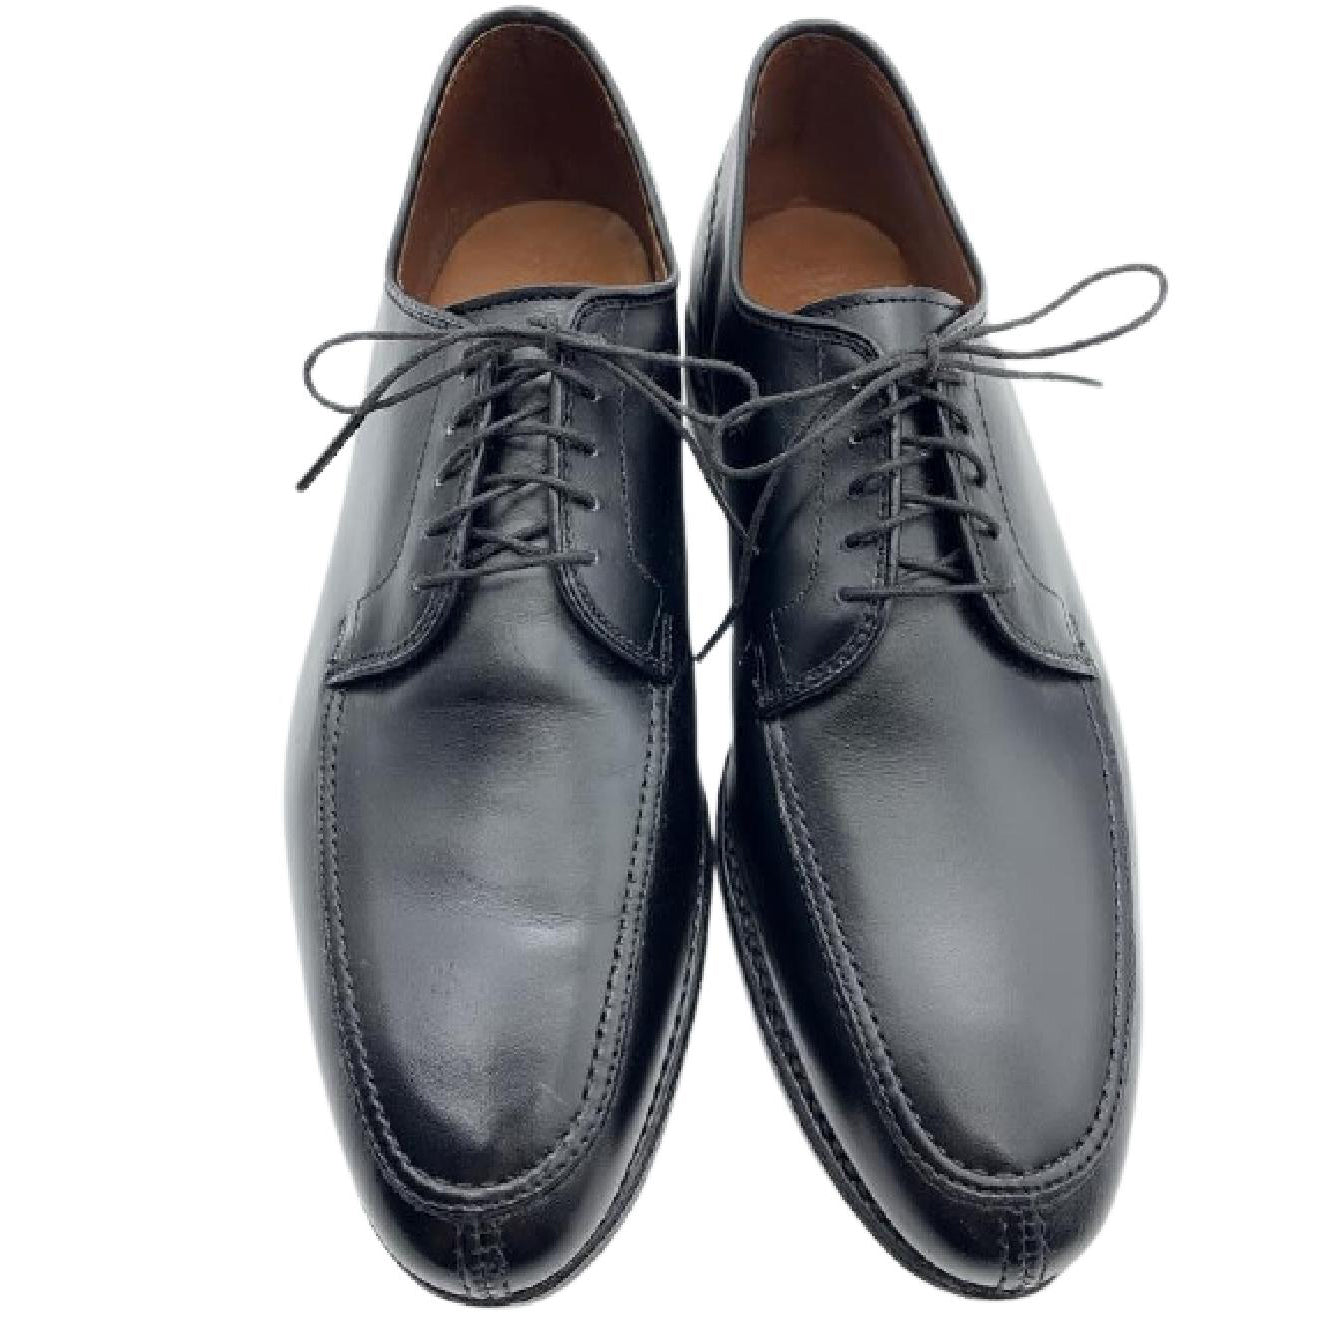 Allen Edmonds Men's Black Leather Tie Shoes - Size 10 US